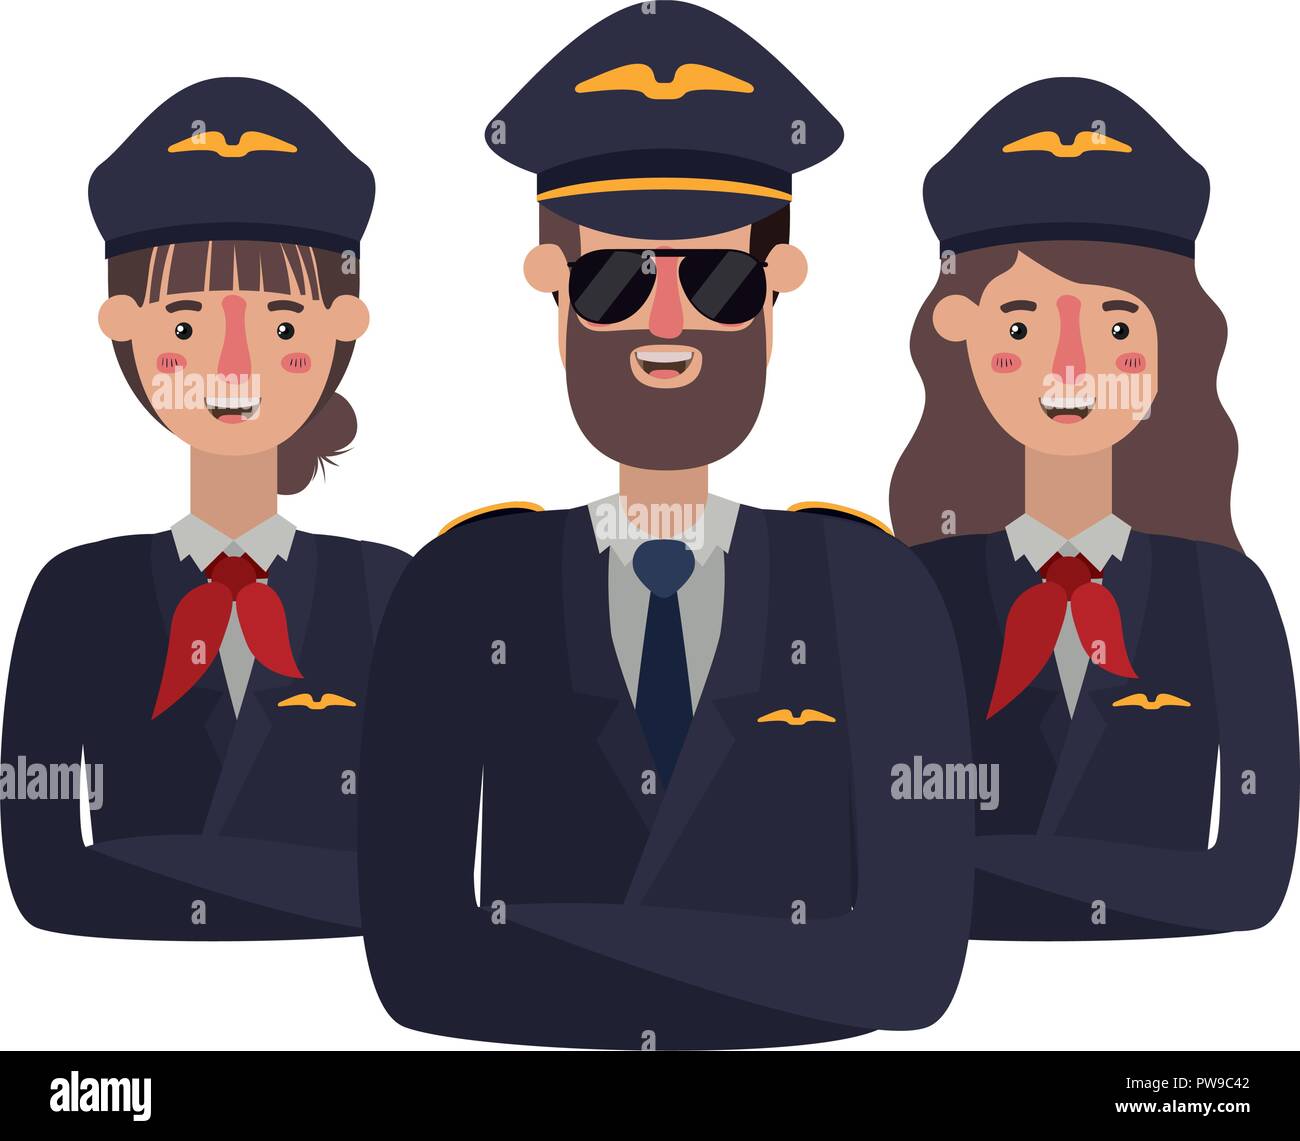 Gruppe von Piloten avatar Charakter Stock Vektor